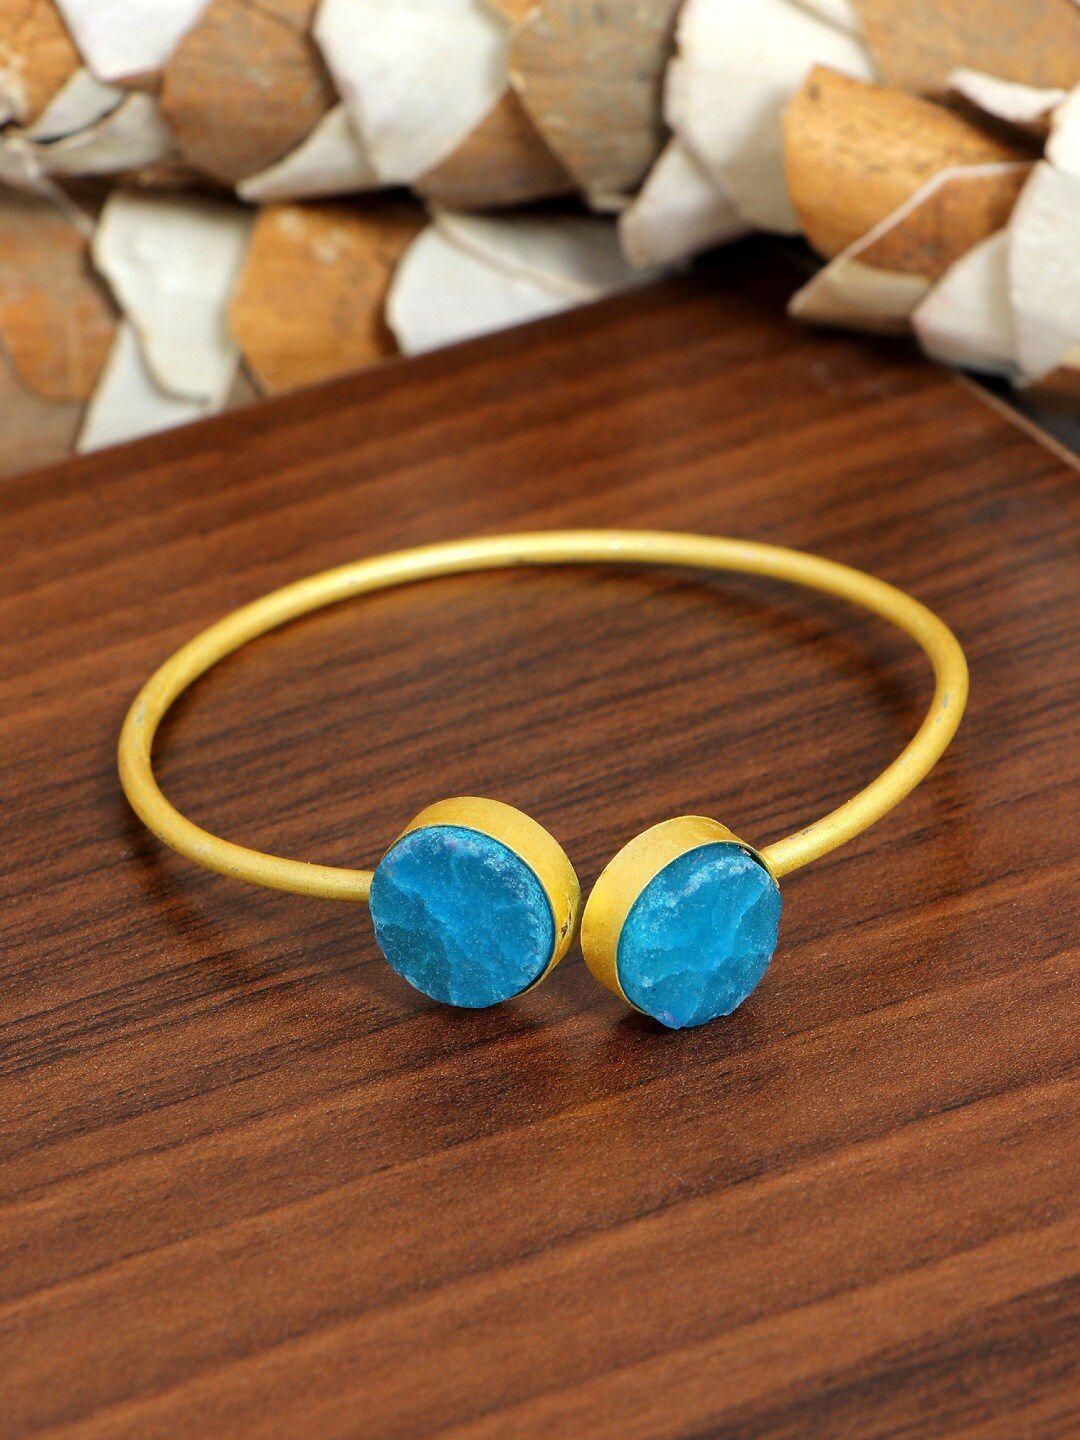 swadev women blue & gold-toned enamelled kada bracelet